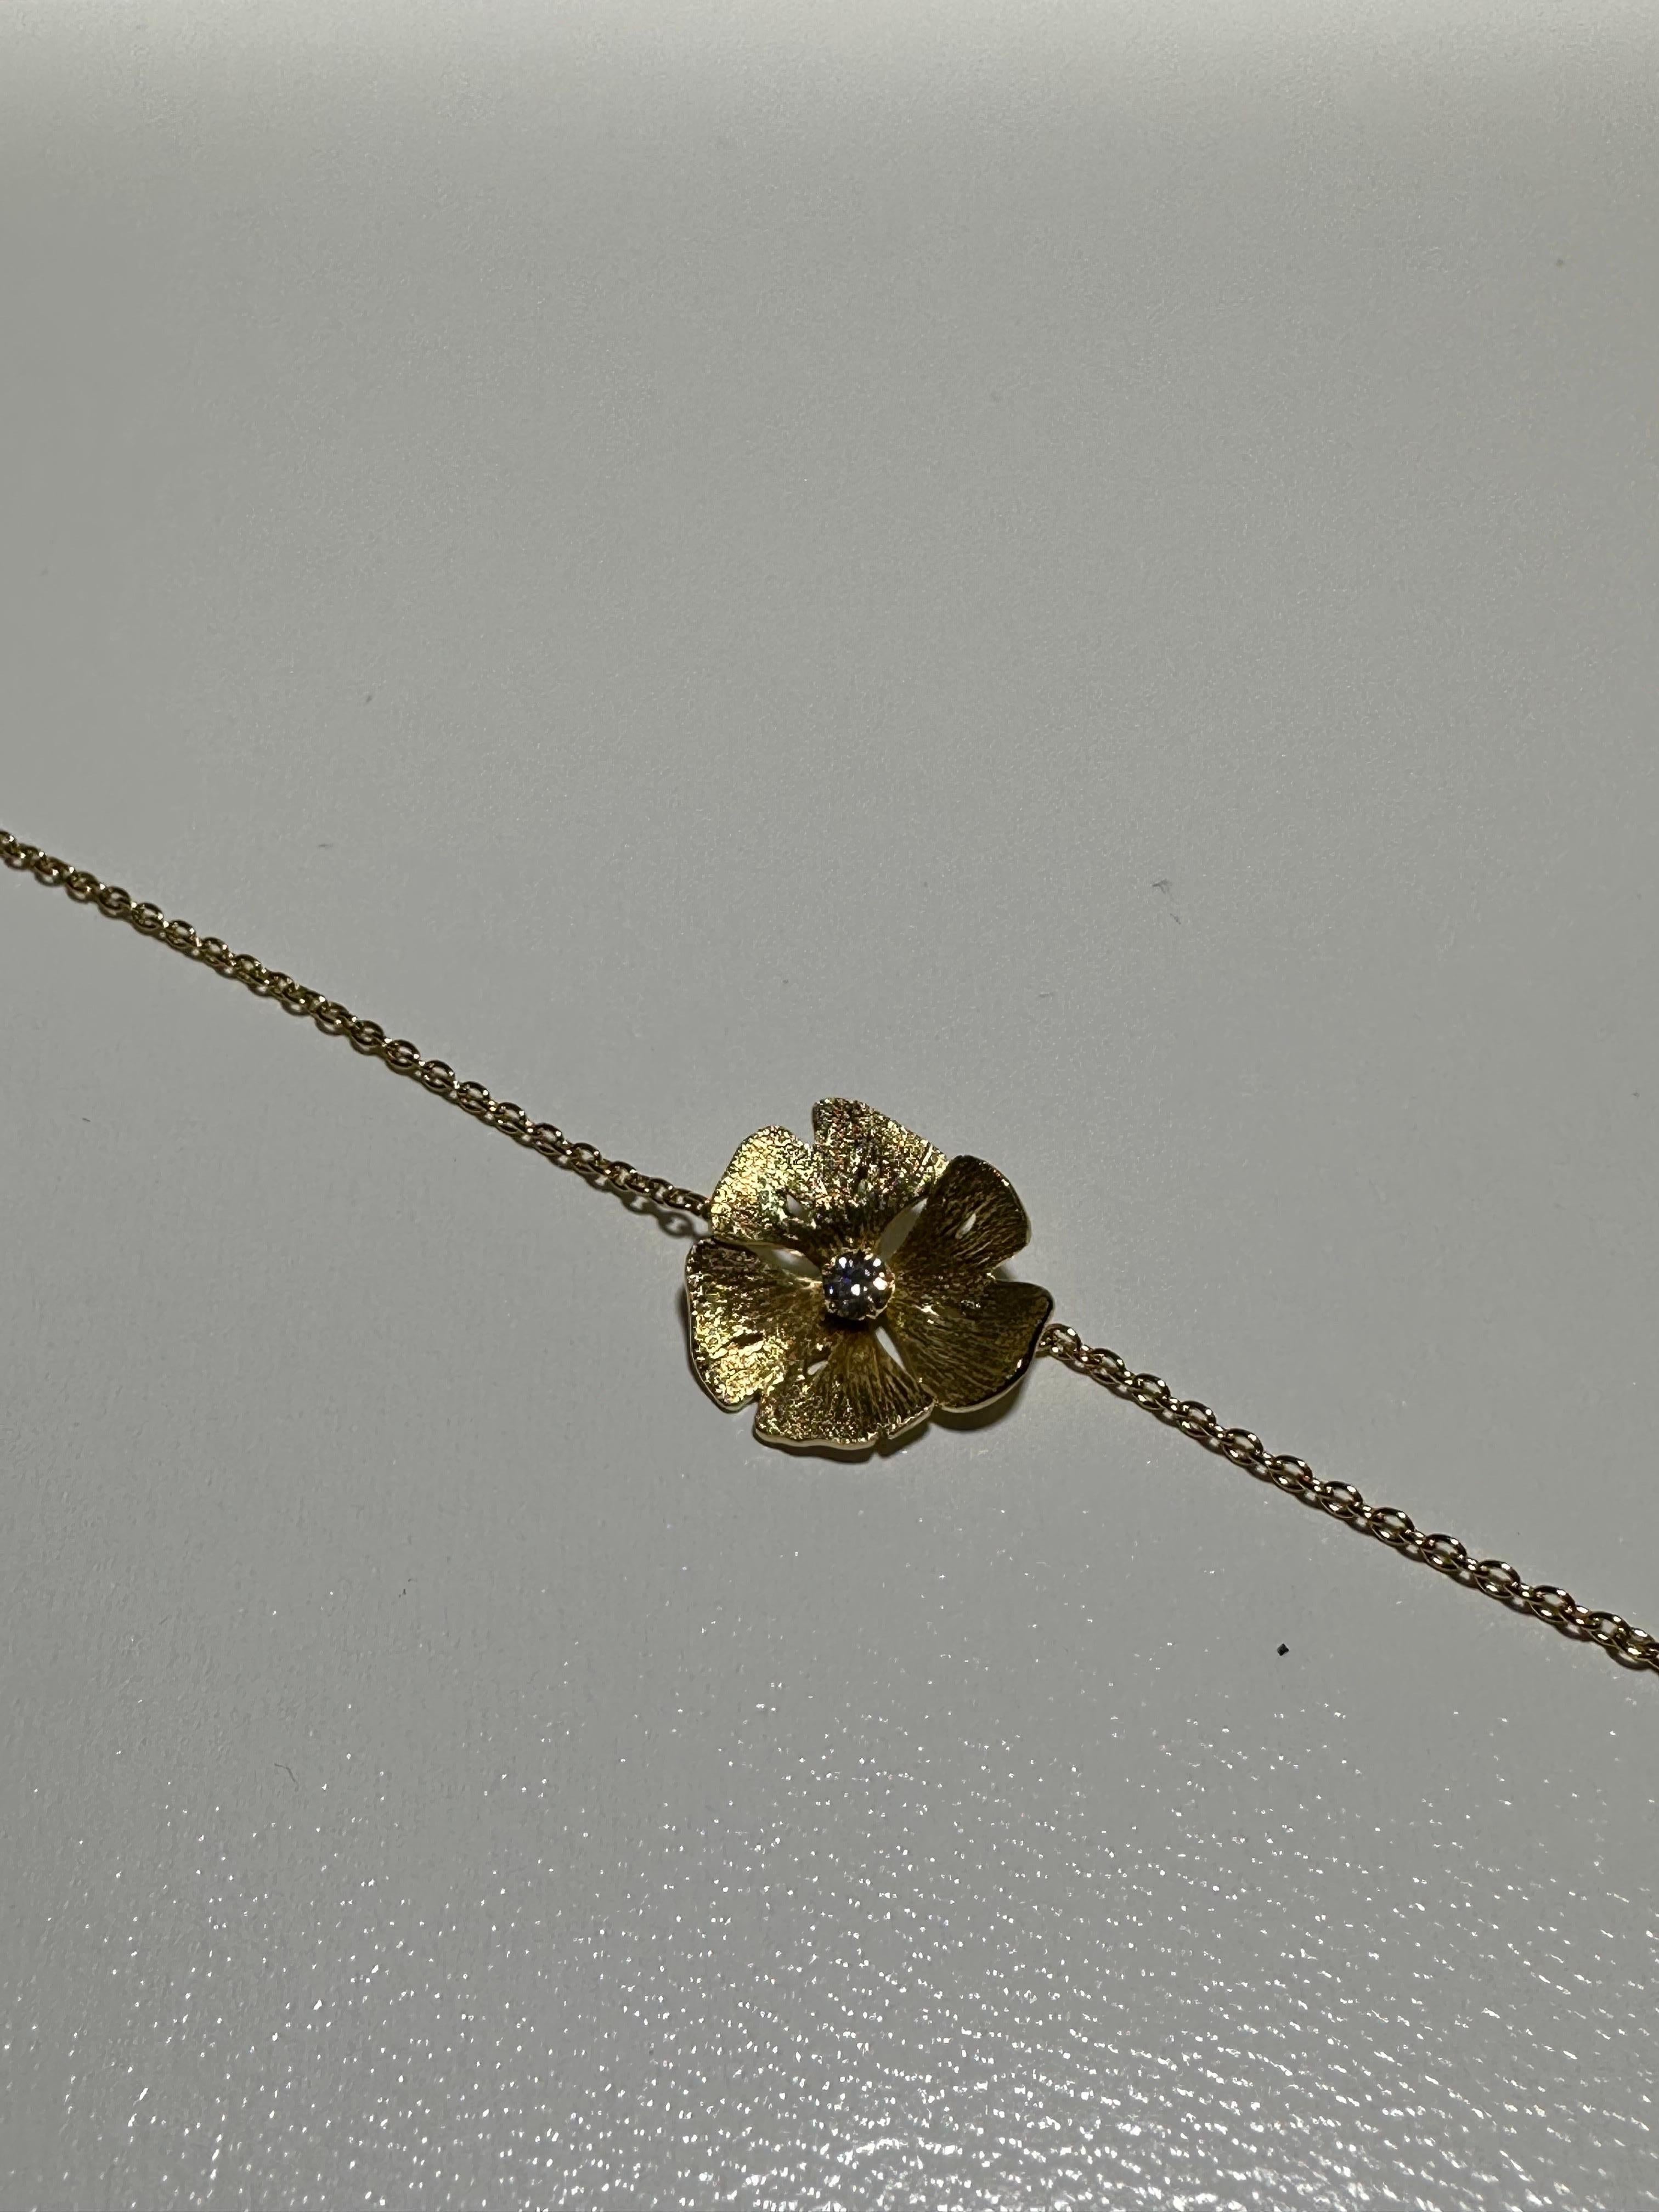 Brandneues Armband aus dem französischen Schmuckhaus Vever. Das Armband ist aus 18 kt Gelbgold gefertigt und mit 1 labgrown Diamanten (0,06 ct) besetzt. Das Armband kann auf 17,5, 16,5 und 15,5 cm getragen werden.

Die Geschichte beginnt 1821 in